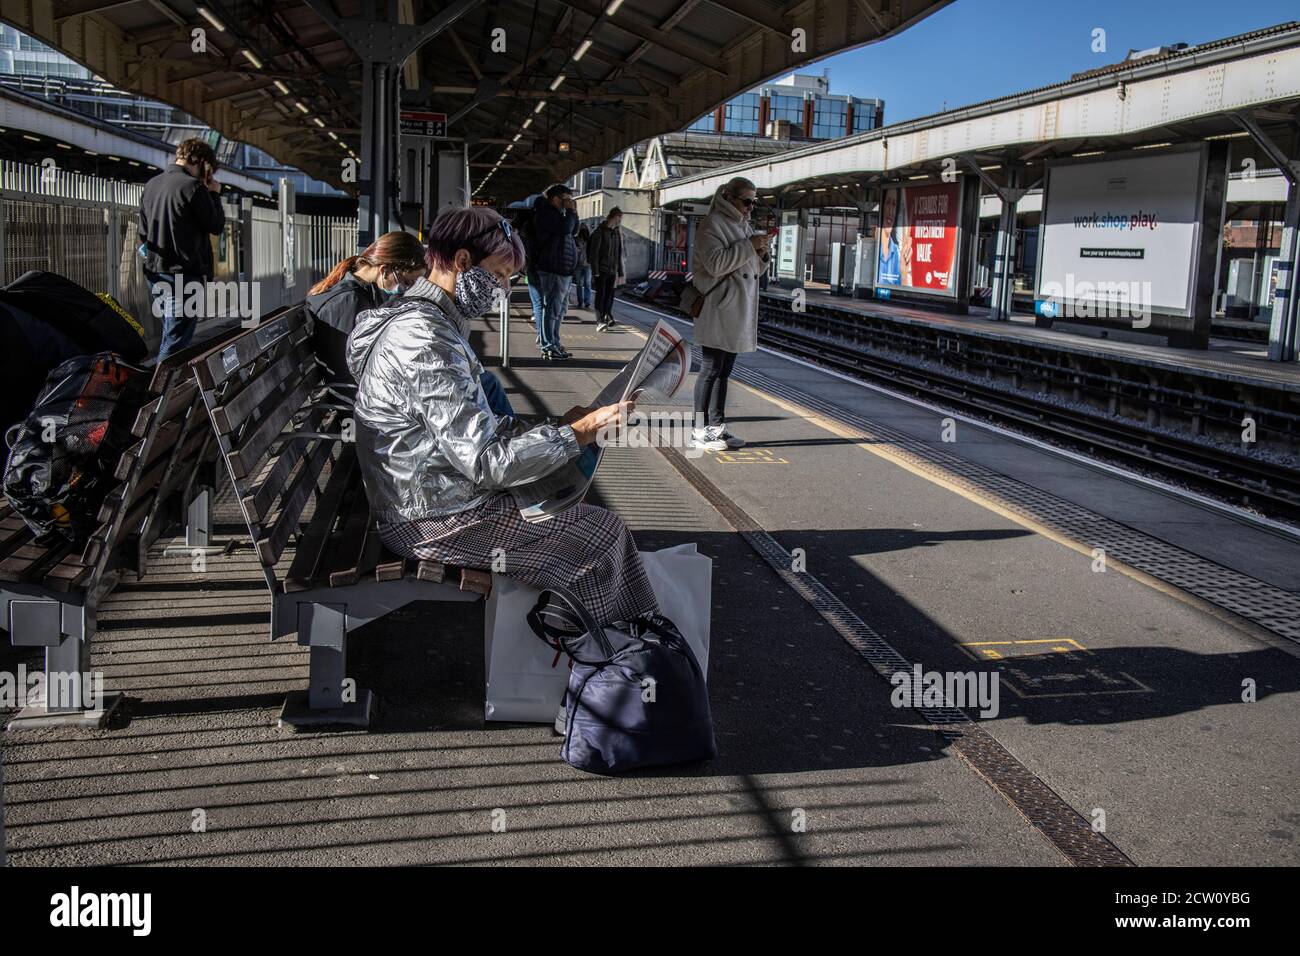 Frau mit silberfarbenem wasserdichtem Mantel liest eine kostenlose Zeitung auf der Plattform der Wimbledon Station, Südwestengland, Großbritannien Stockfoto